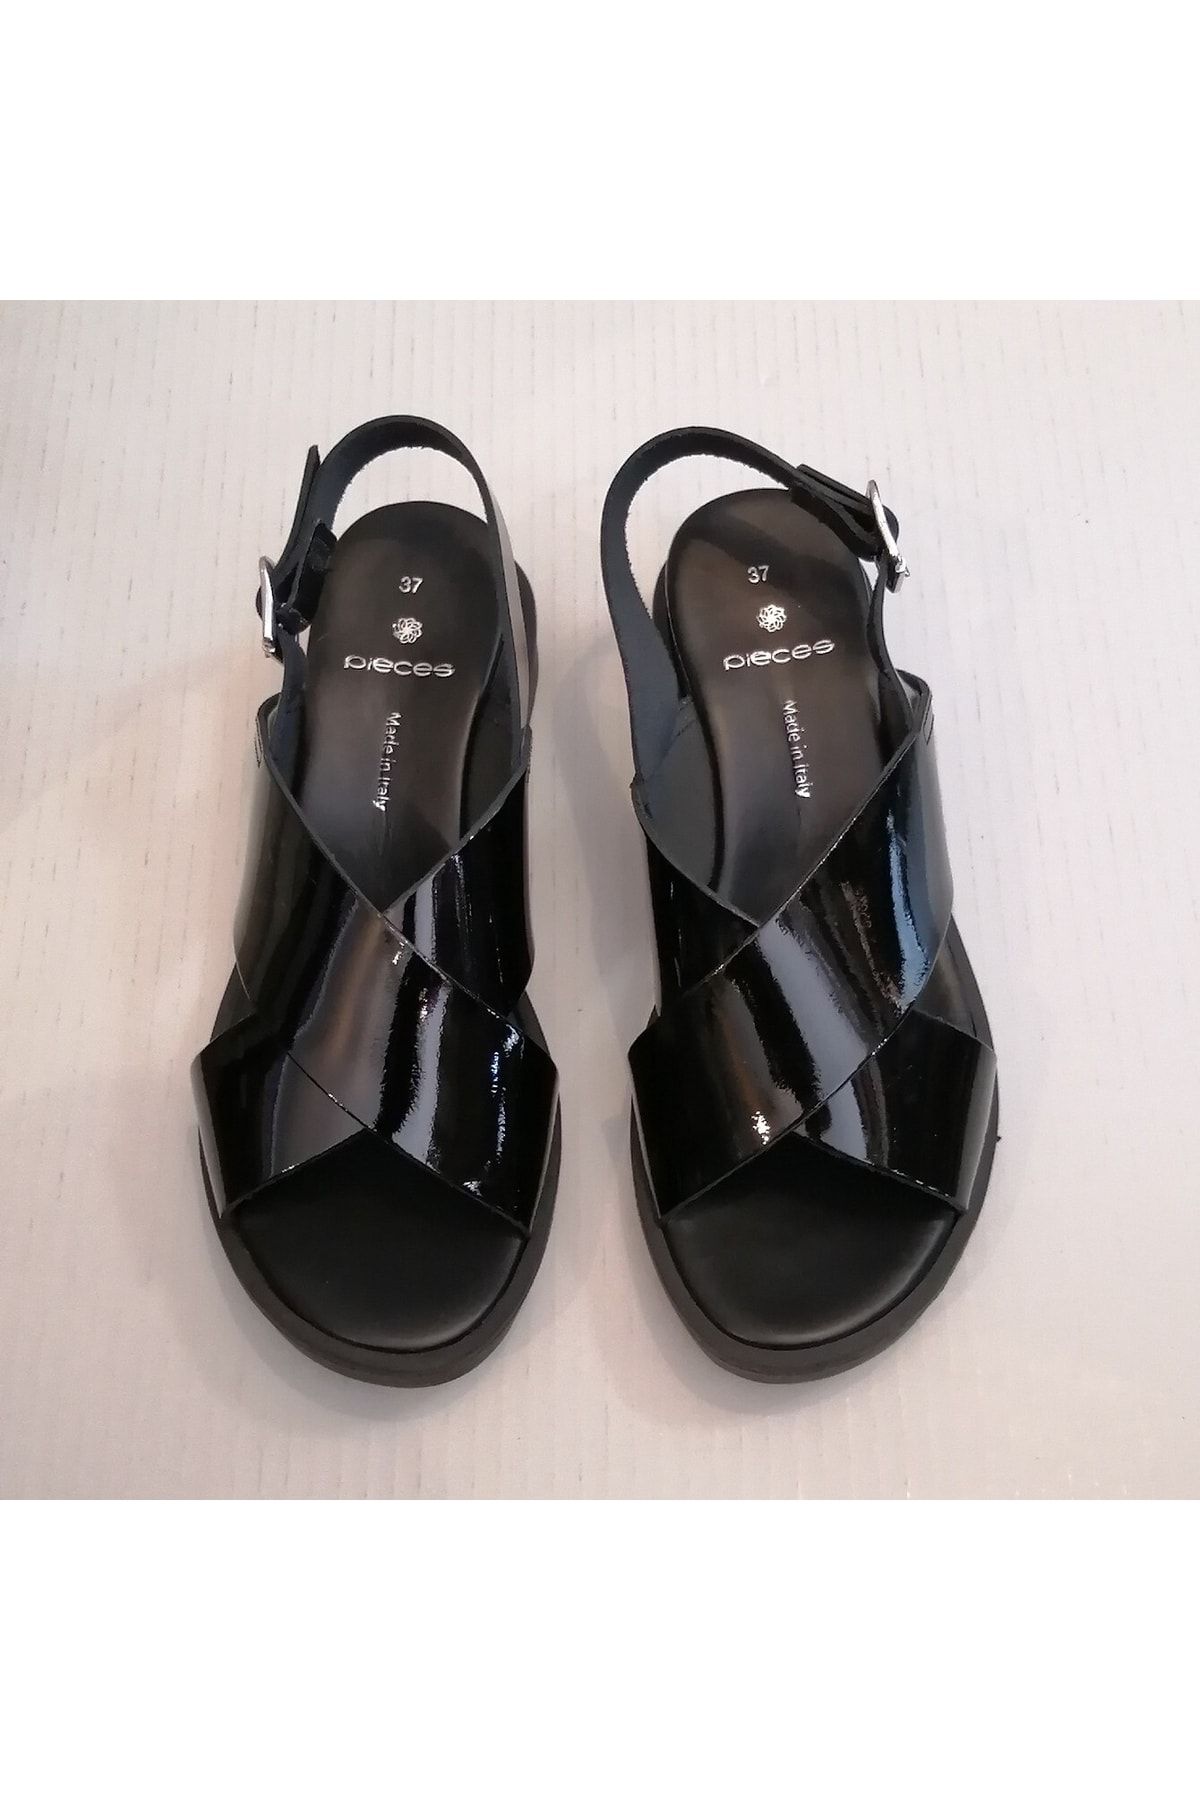 Piecess Kadın Hakiki Deri Siyah Rugan Çapraz Bantlı Bilekten Gümüş Tokalı Kauçuk Tabanlı Sandalet